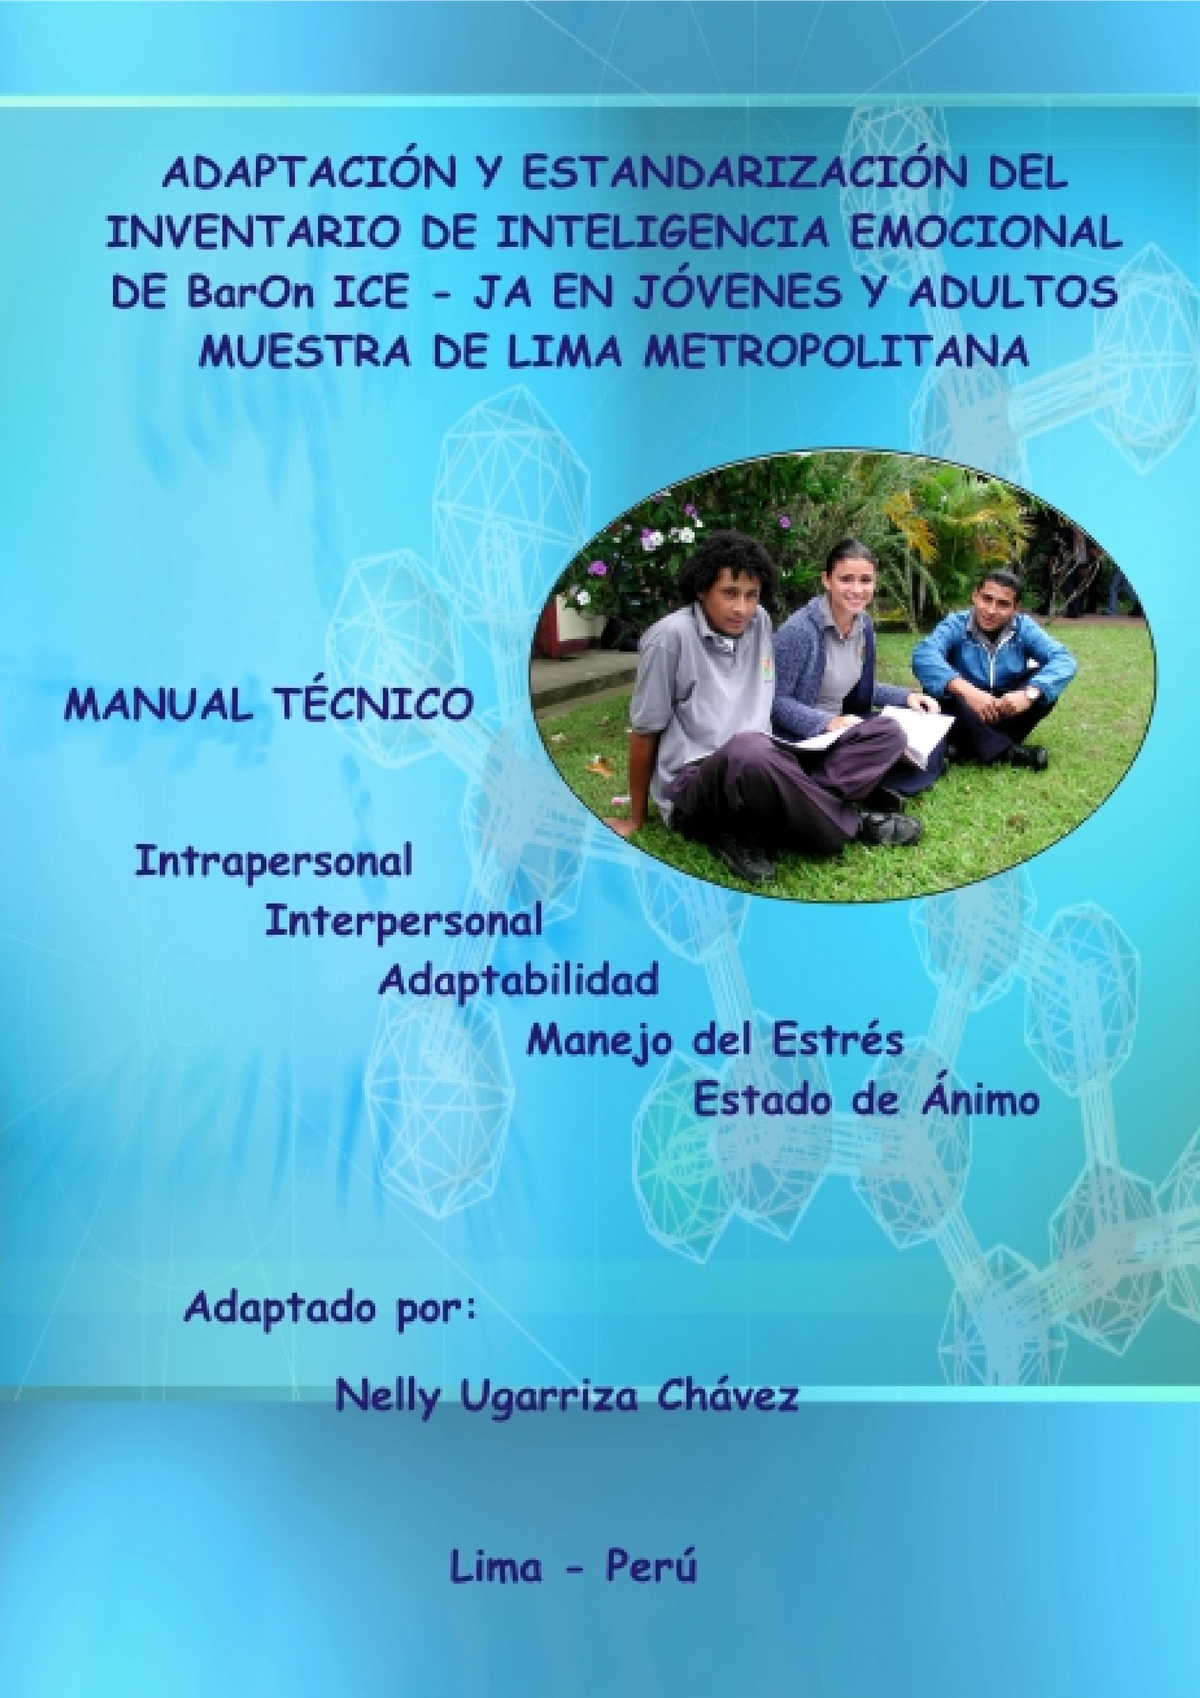 Manual Baron ICE - test de inteligencia emocional - 0 ADAPTACIÓN Y  ESTANDARIZACIÓN DEL INVENTARIO DE - Studocu